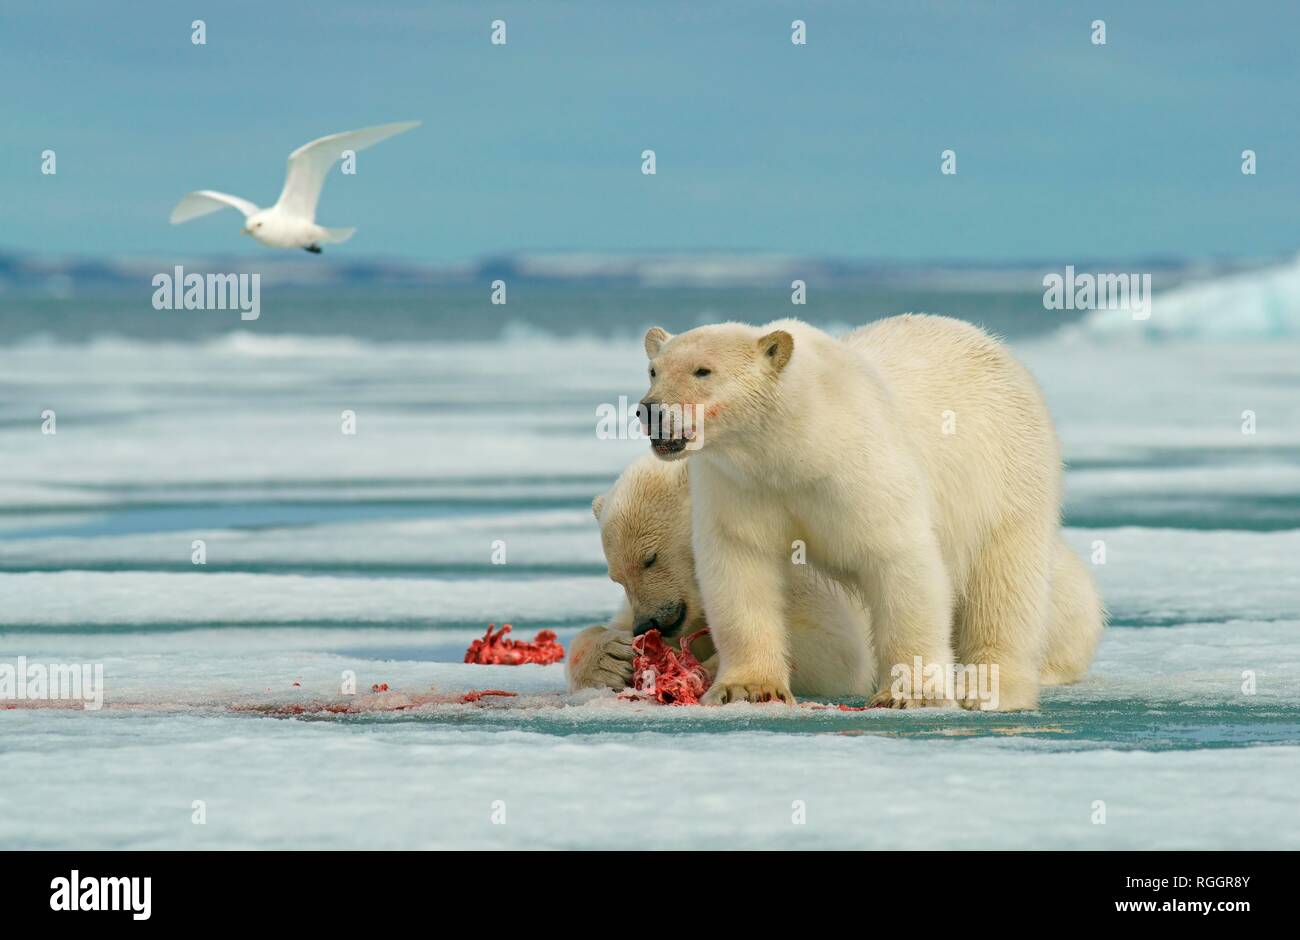 Eisbären (Ursus maritimus), junge Tiere auf der Weide auf dem Kadaver eines erfassten Dichtung, in der norwegischen Arktis Svalbard, Norwegen Stockfoto